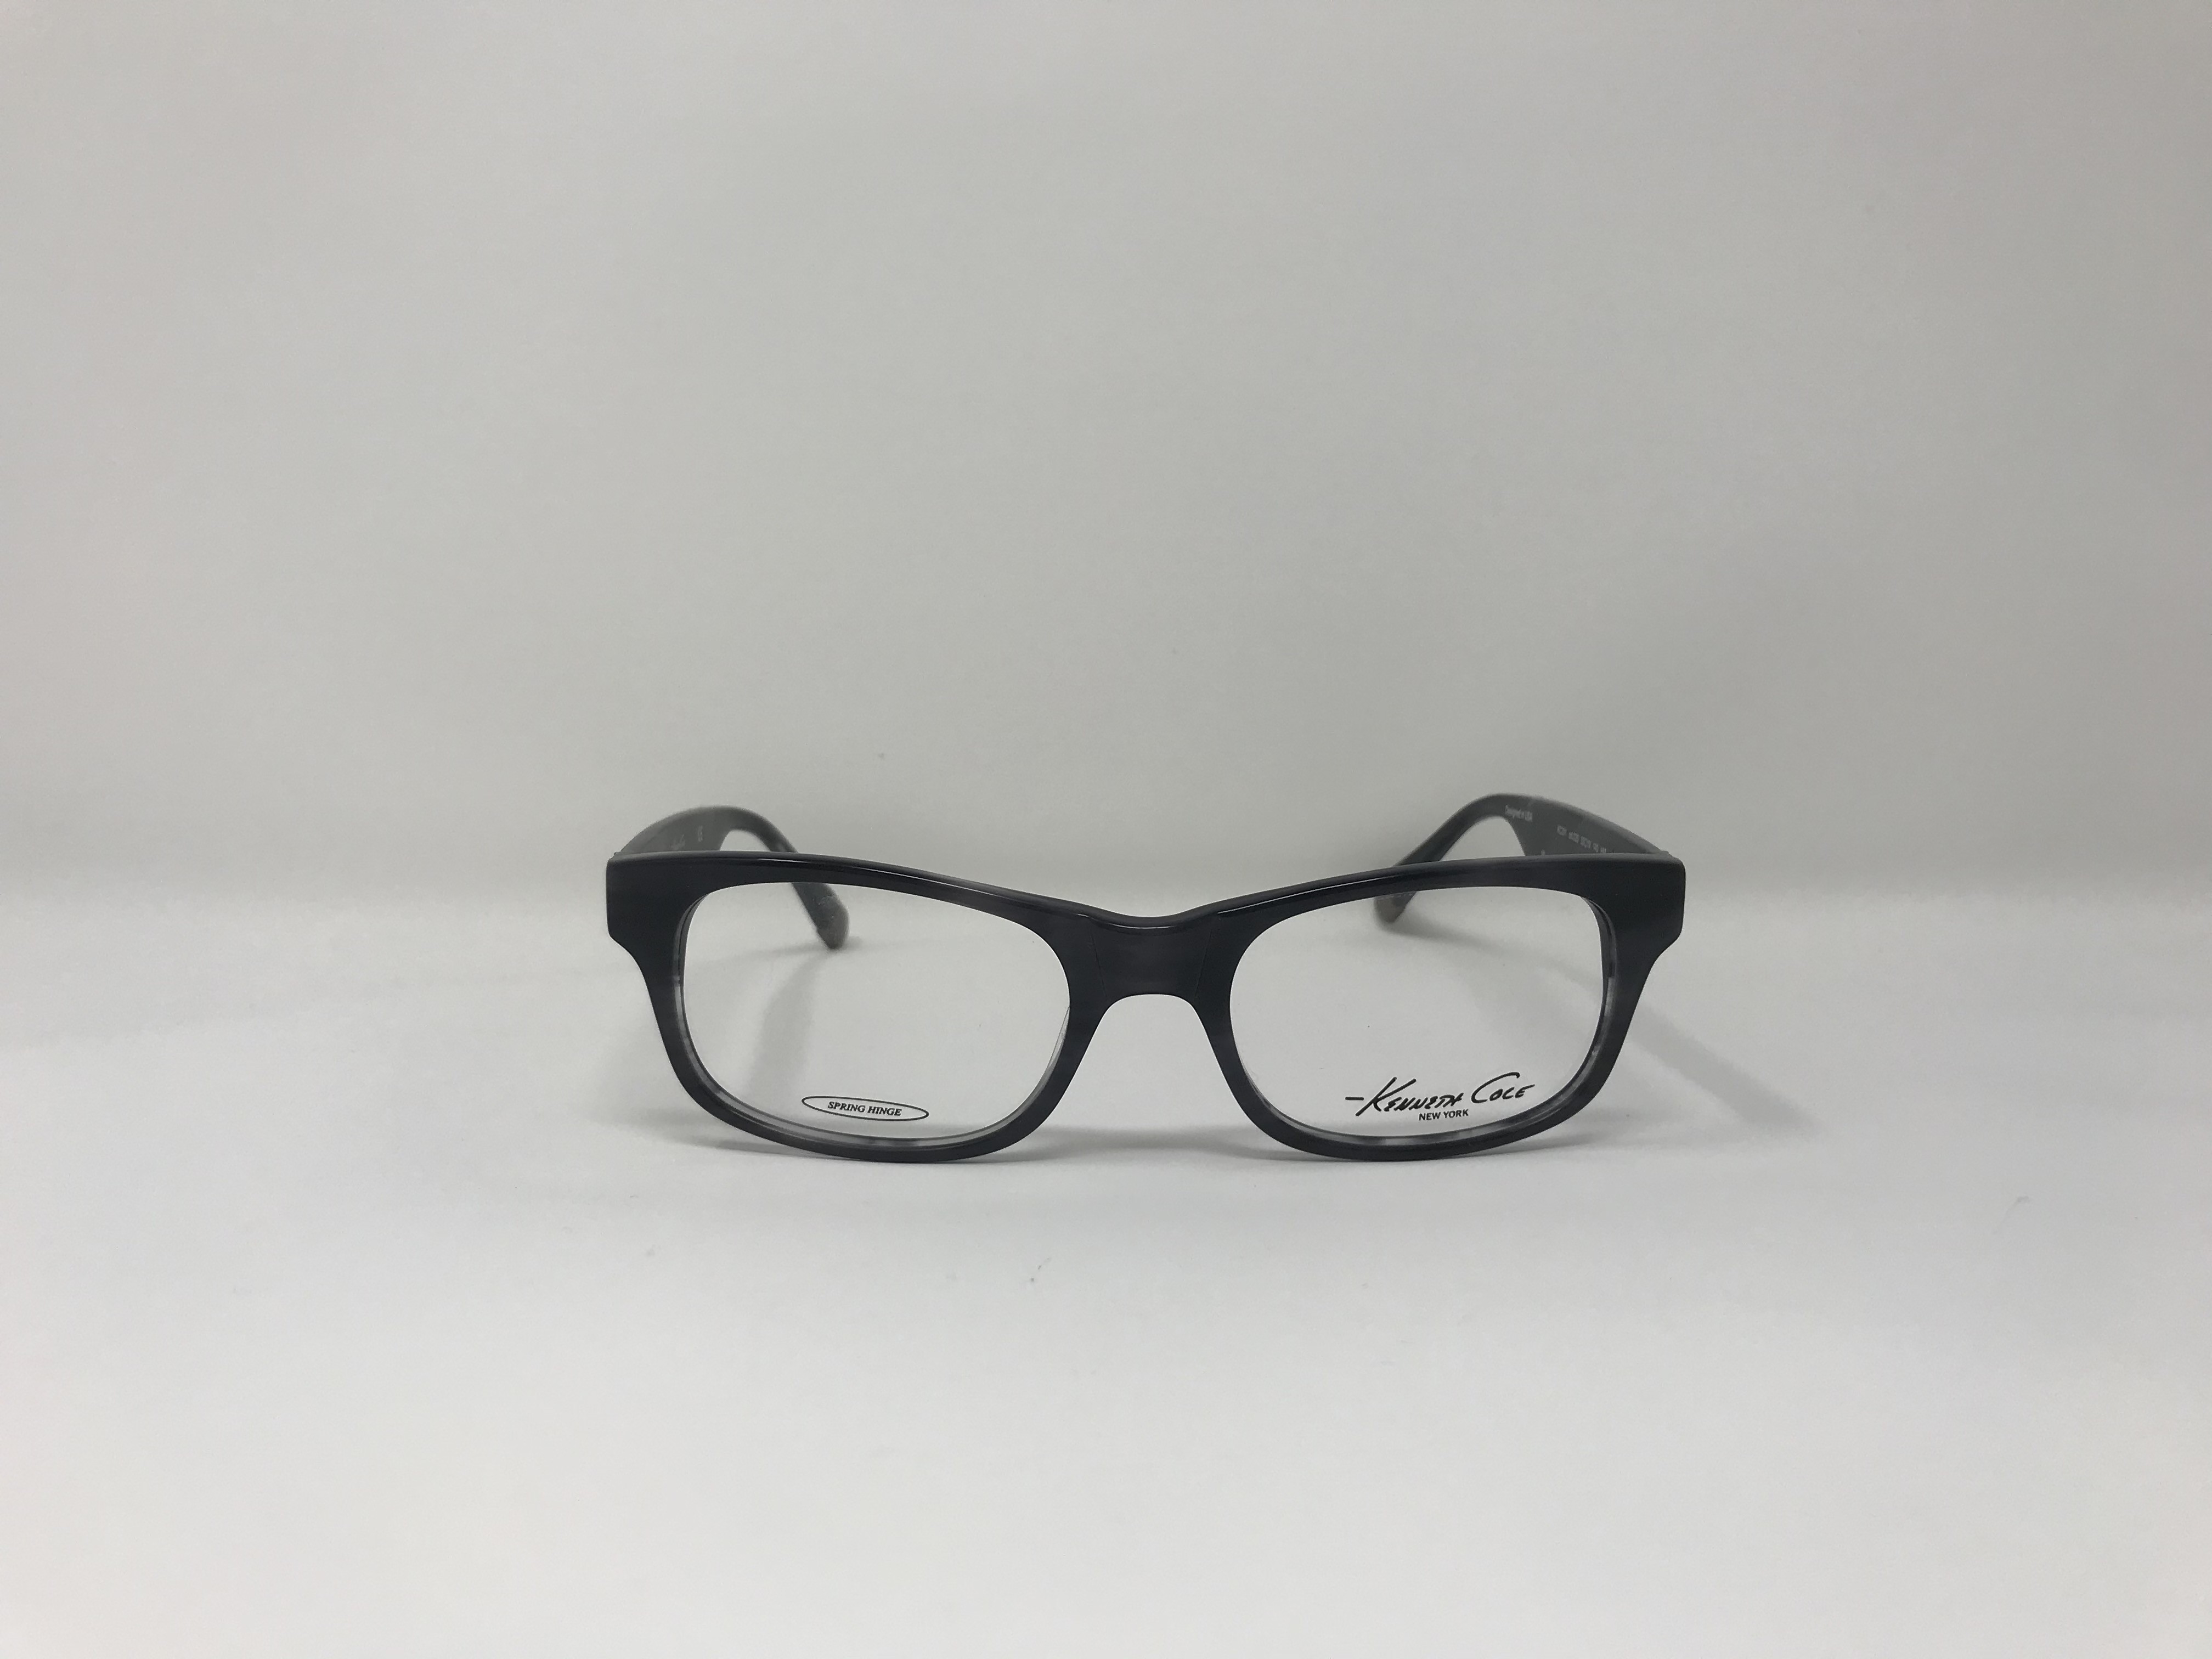 Kenneth Cole KC 201 Men's eyeglasses